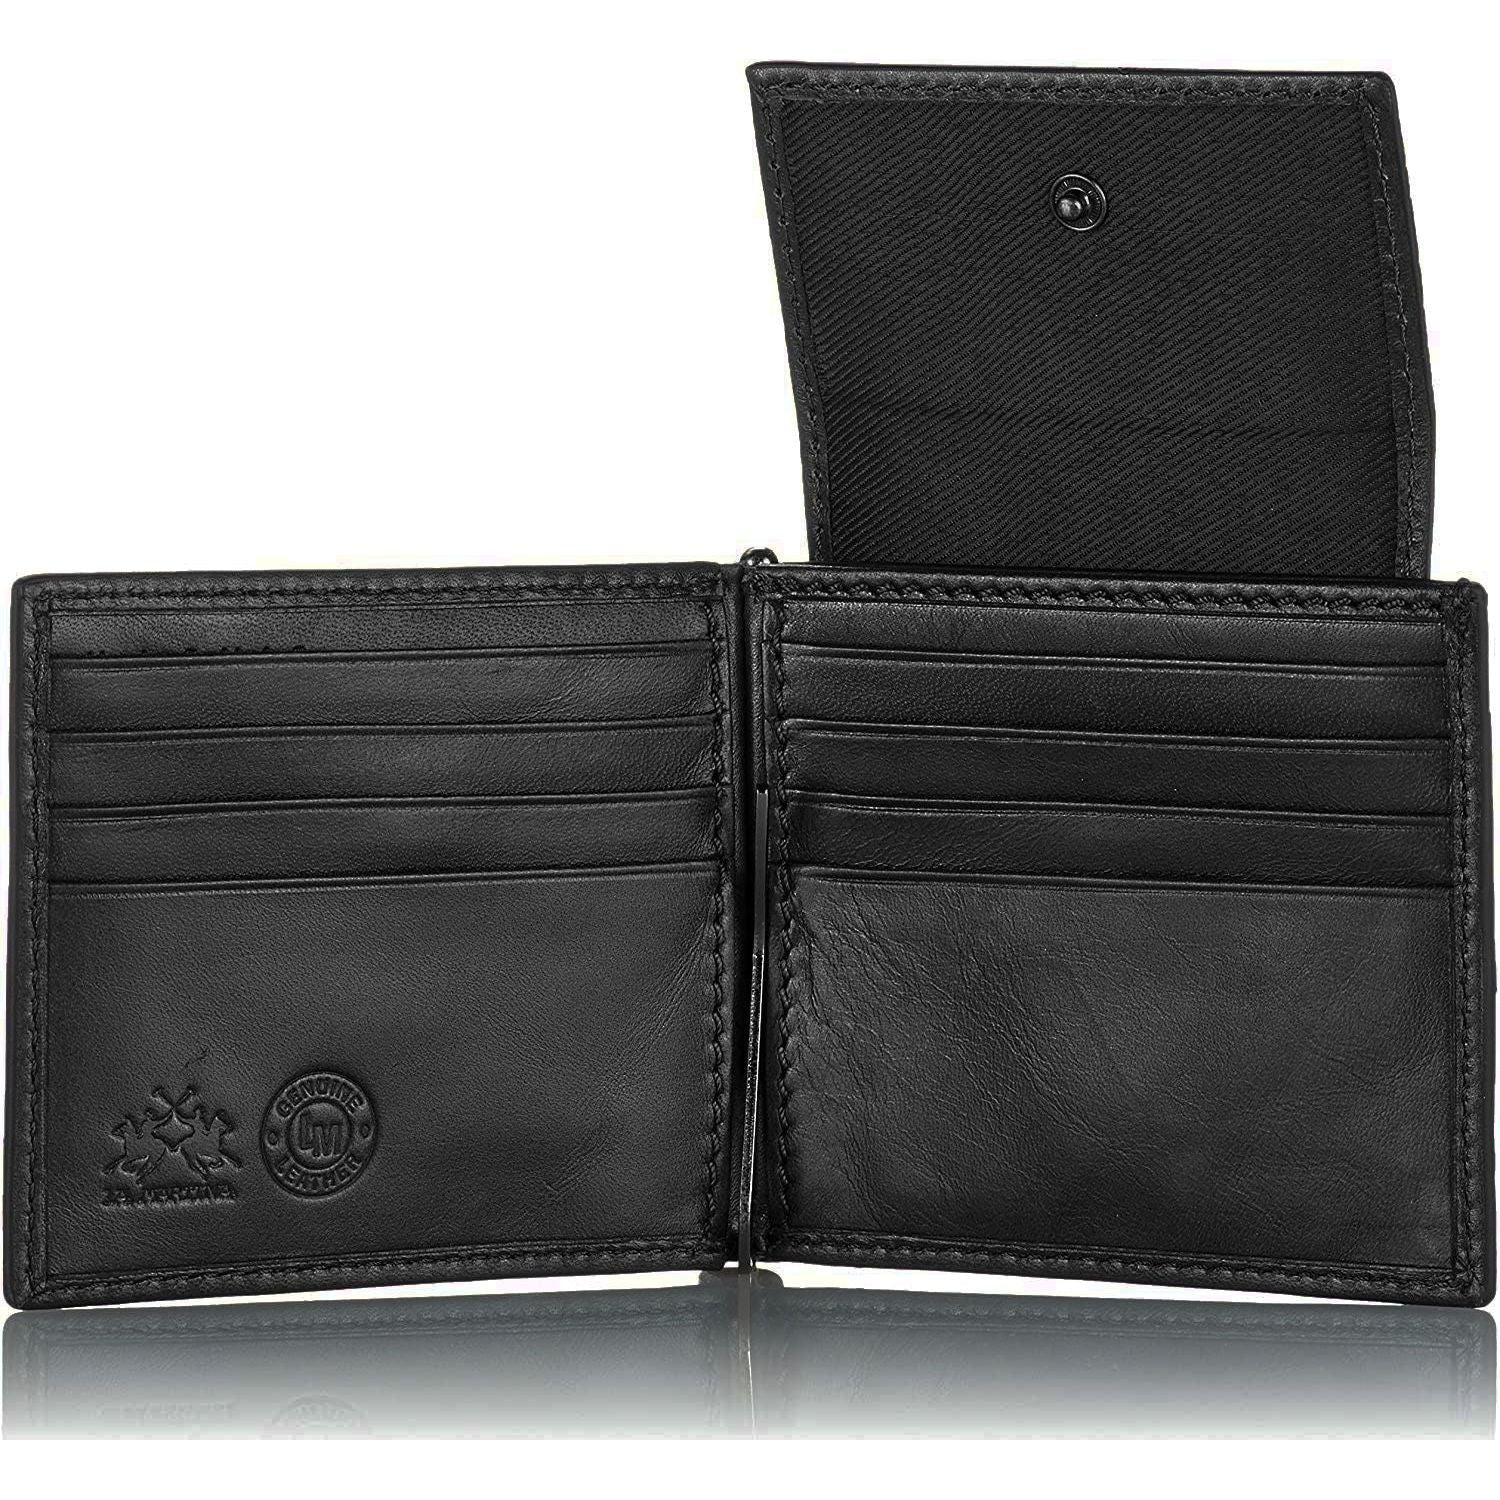 La Martina | Black Leather Wallet | 79.00 - McRichard Designer Brands